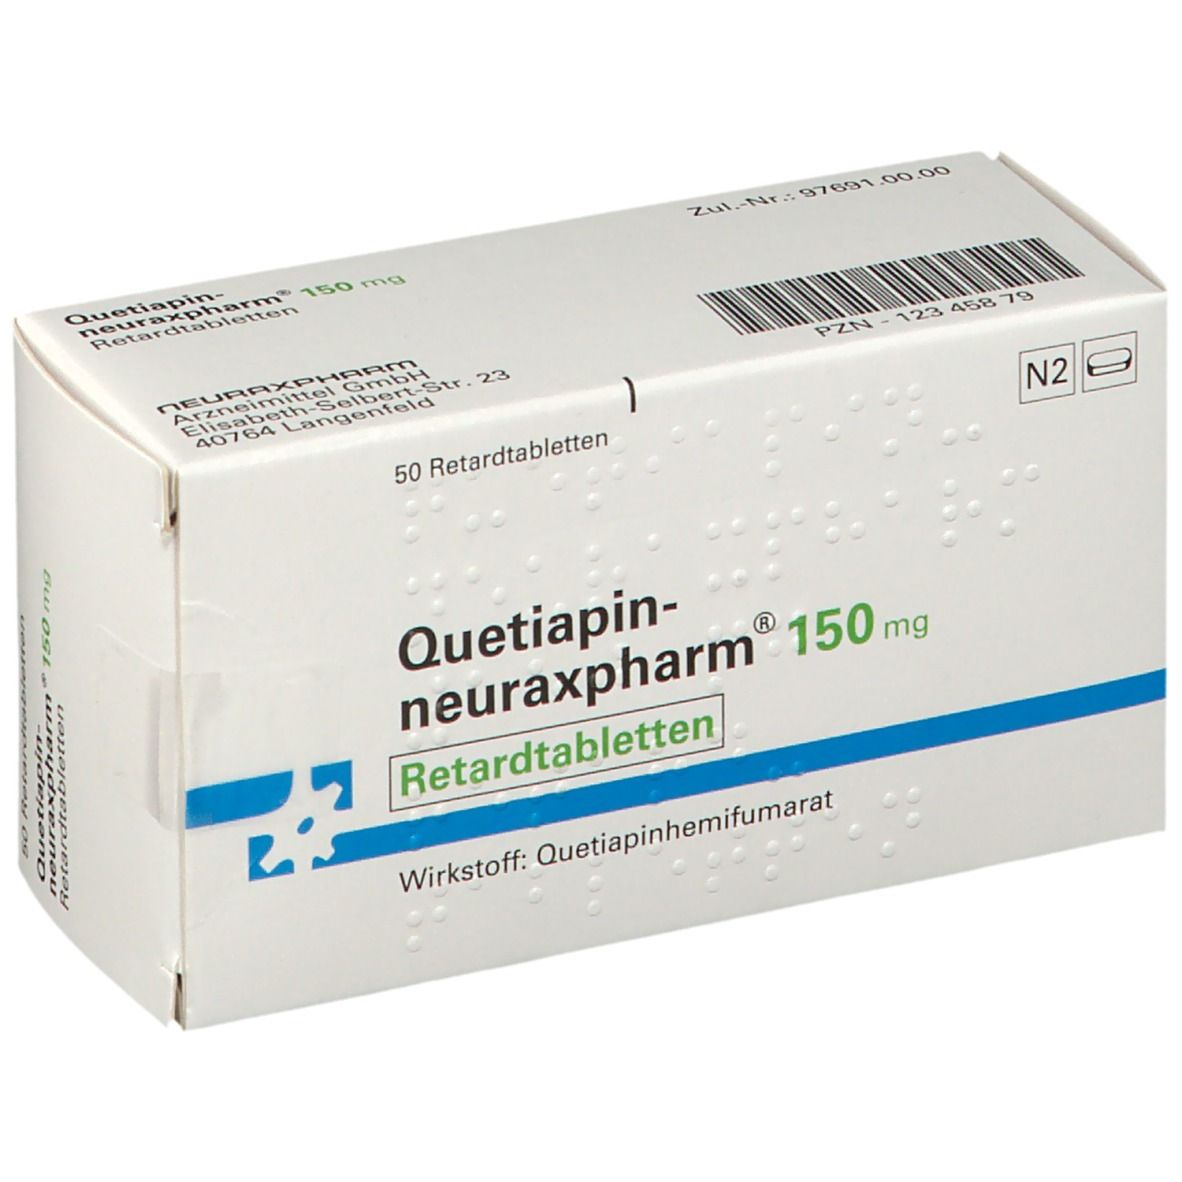 Quetiapin-neuraxpharm® 150 mg